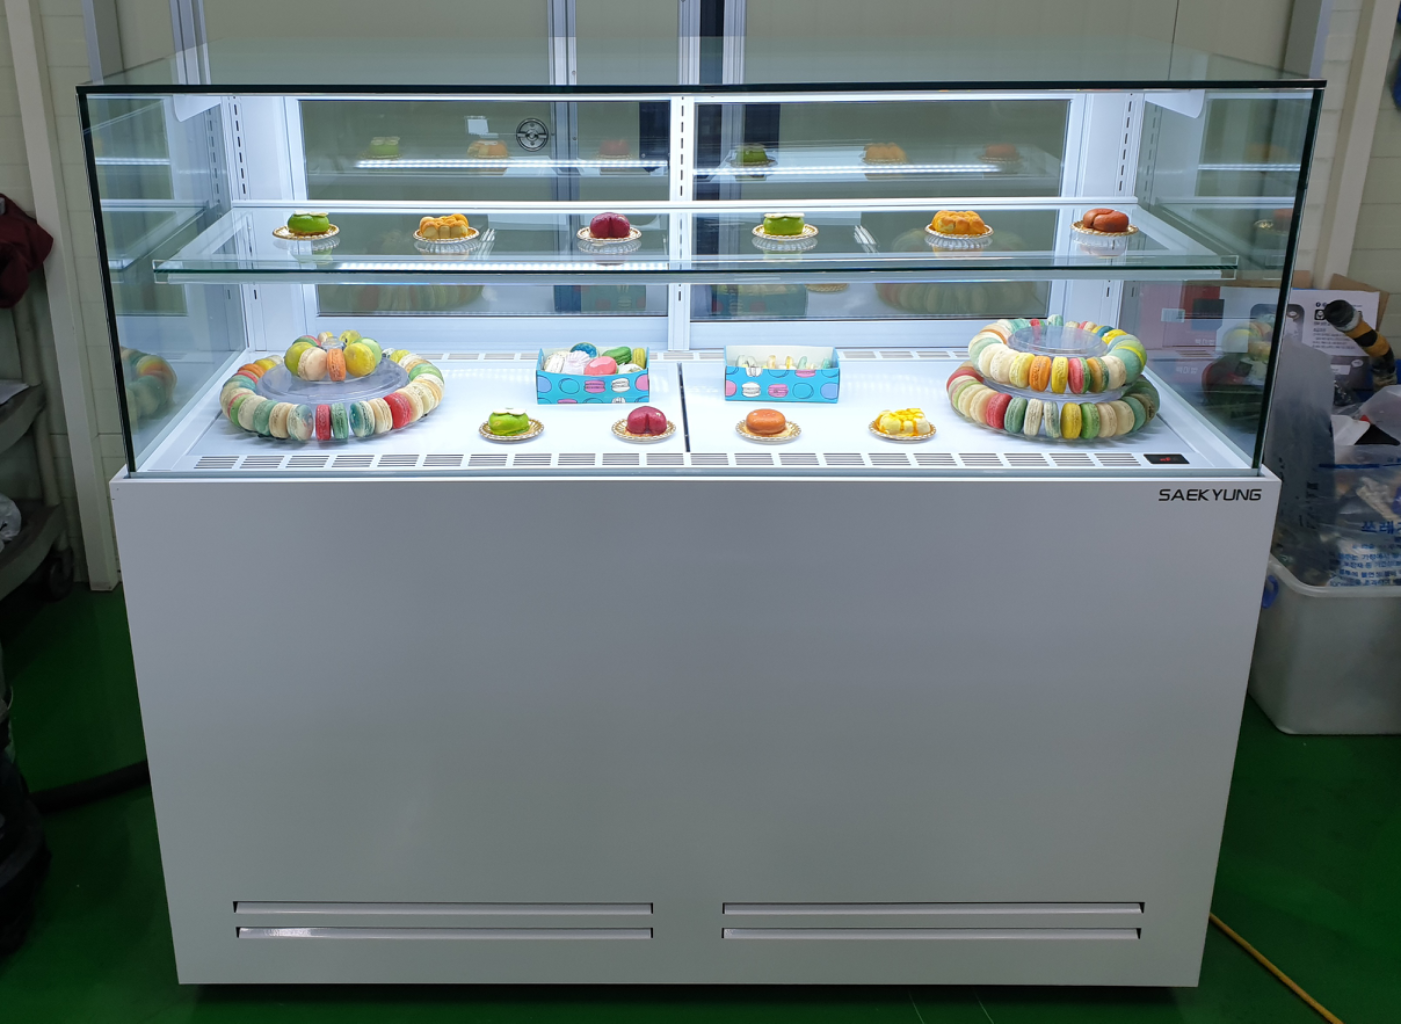 카페용 마카롱 샌드위치 냉장 쇼케이스 1500